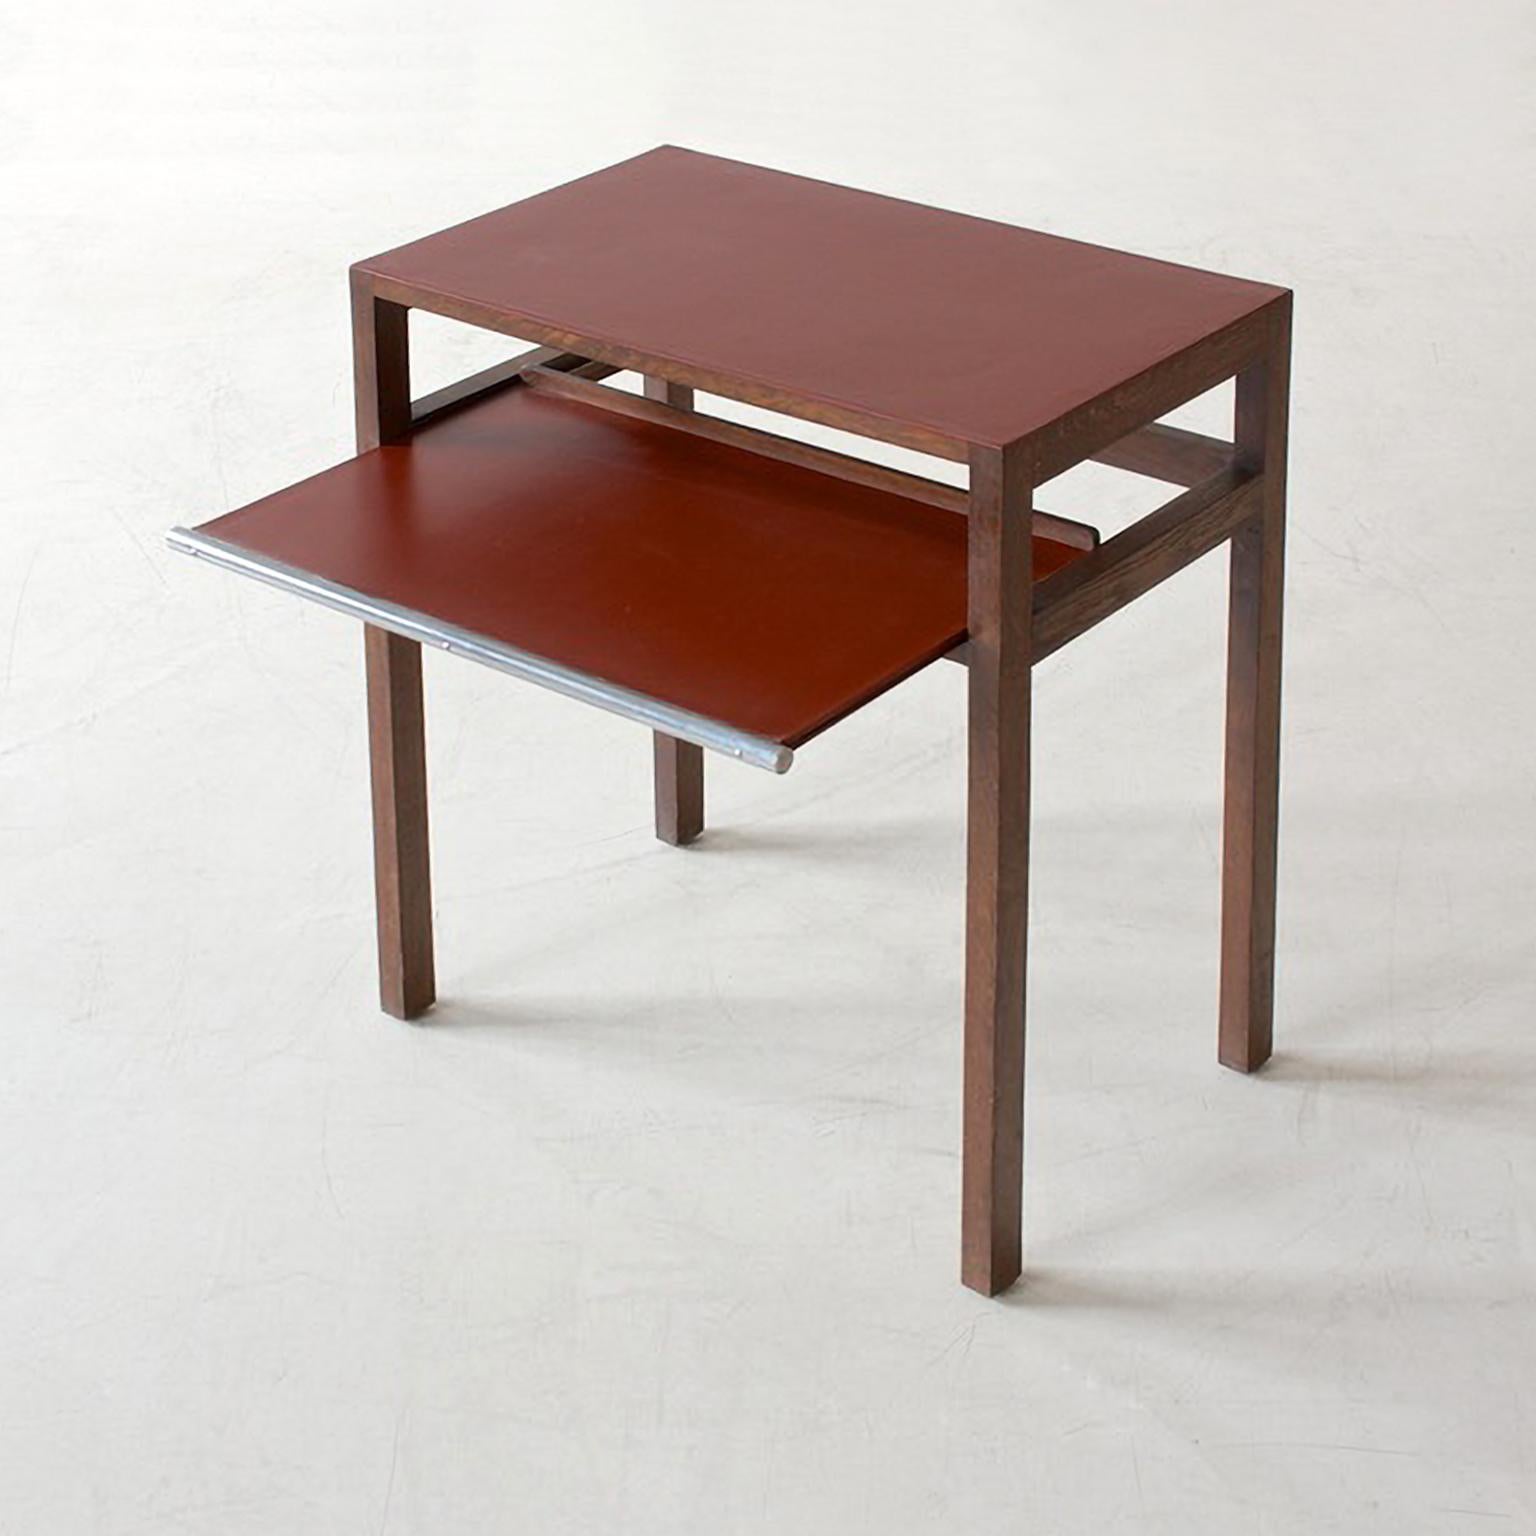 Czech Modernist Side Table by Jindrich Halabala, Stained Oak Wood, Linoleum, 1930 For Sale